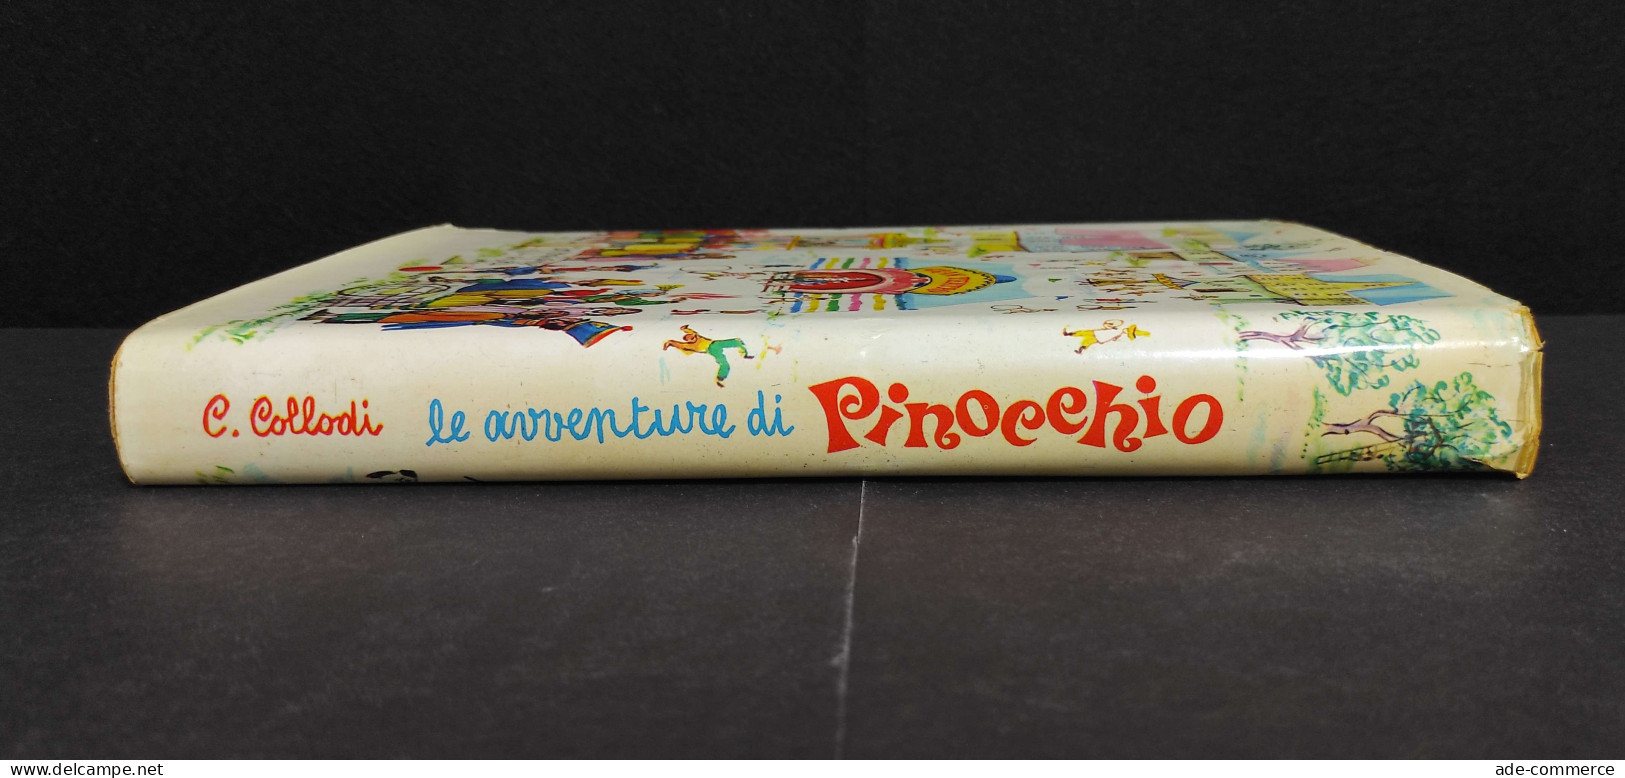 Le Avventure Di Pinocchio - C. Collodi - Ill. Baita - Ed. Capitol - 1962 - Bambini